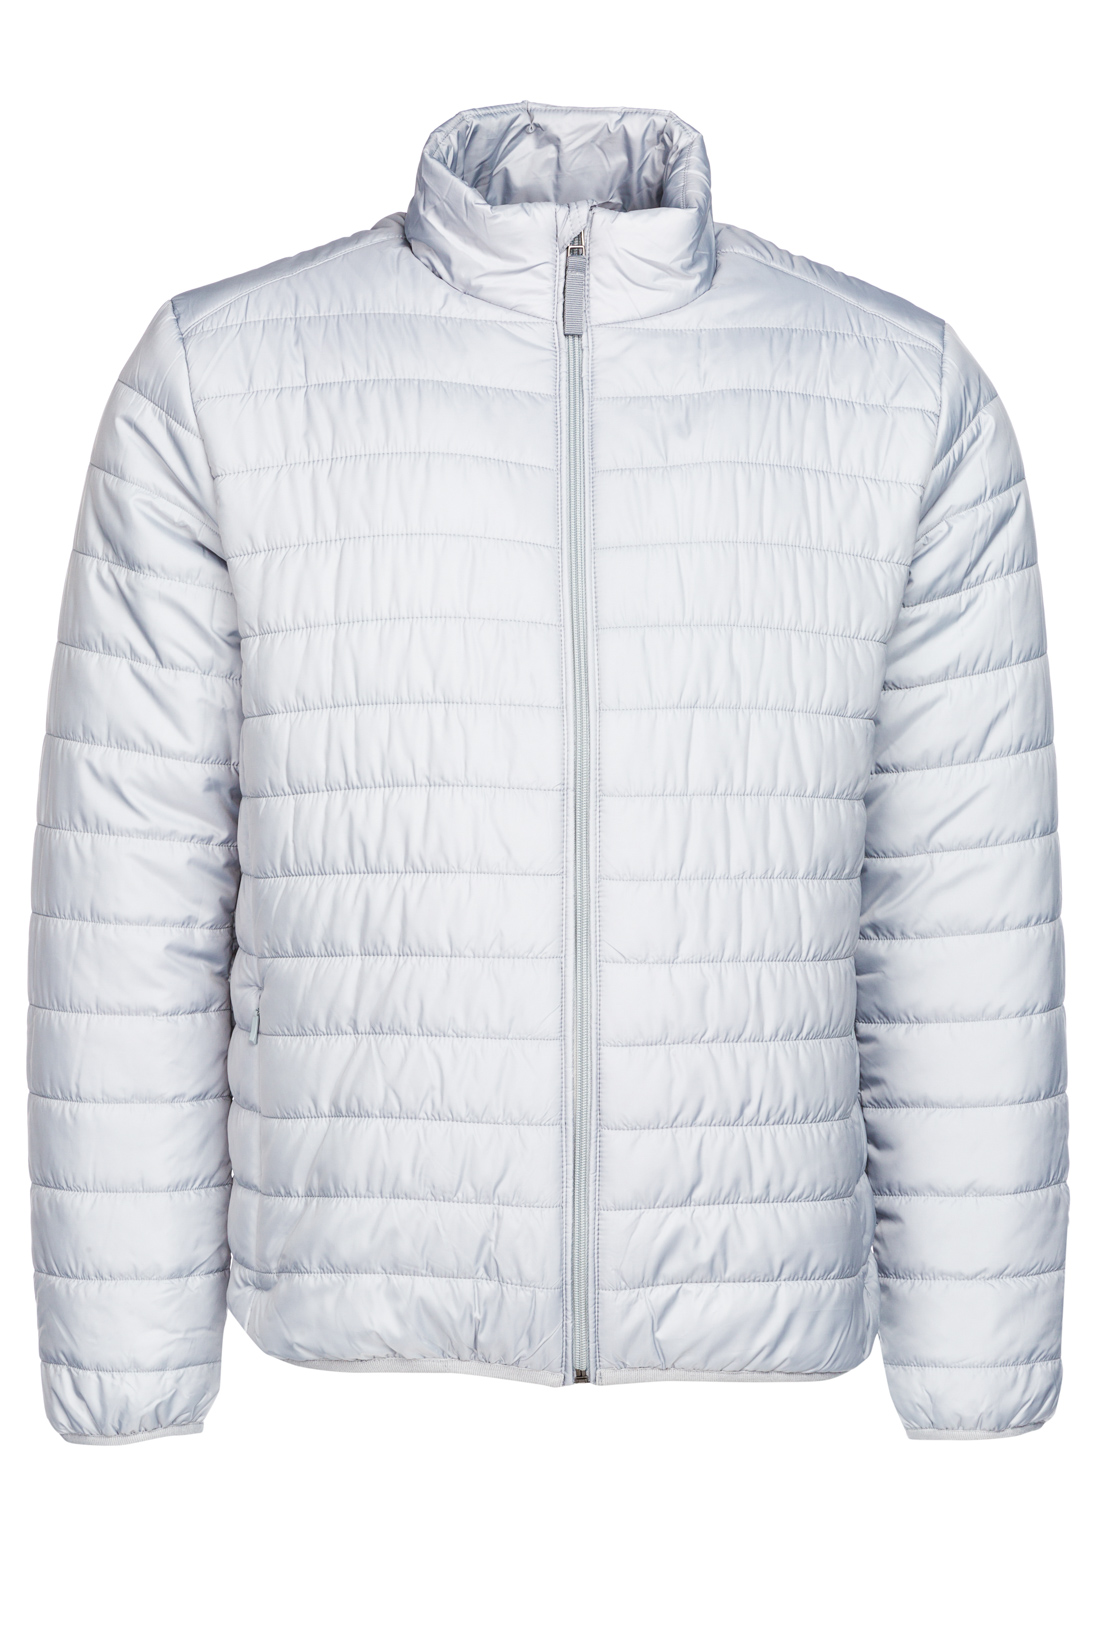 Базовая куртка на молнии (арт. baon B537201), размер M, цвет белый Базовая куртка на молнии (арт. baon B537201) - фото 4